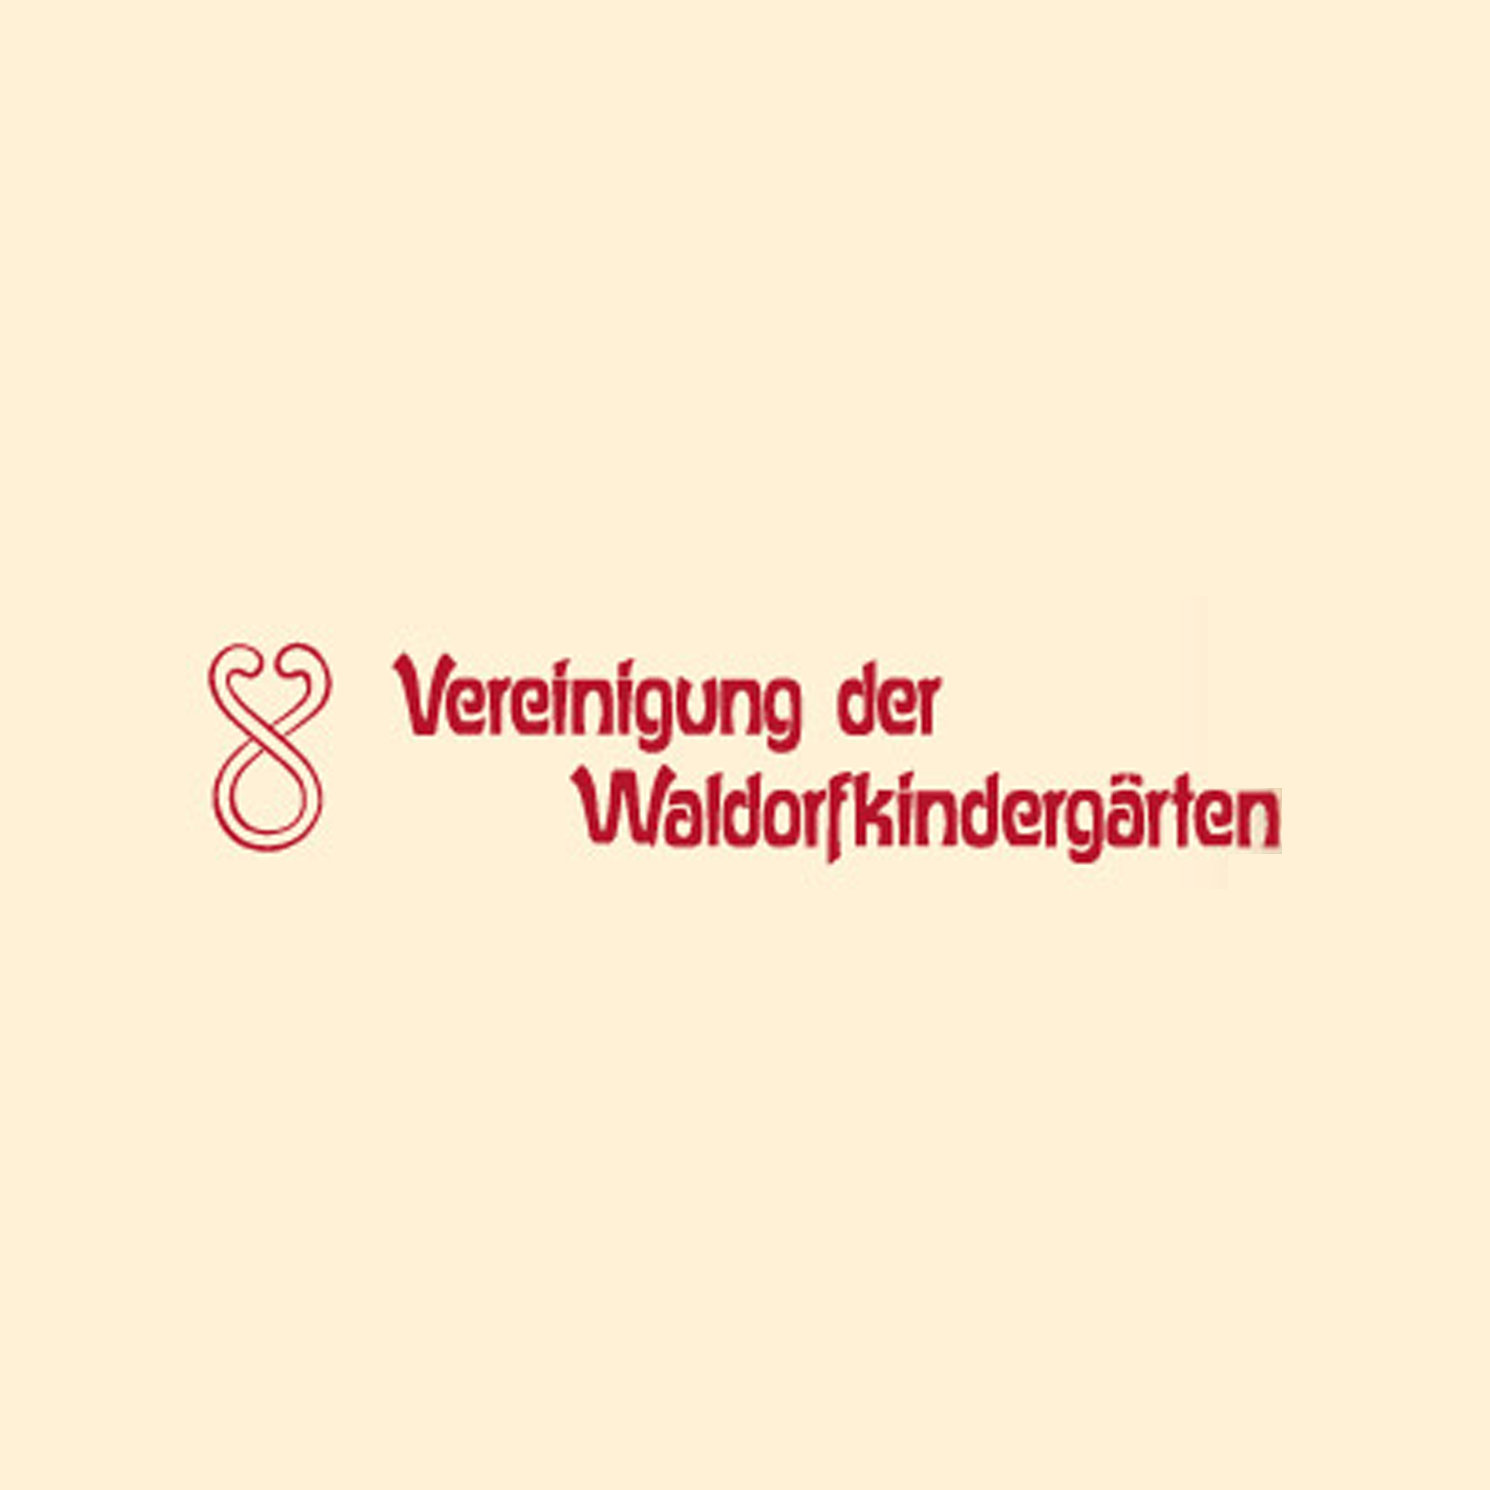  Vereinigung der Waldorfkindergärten e.V.